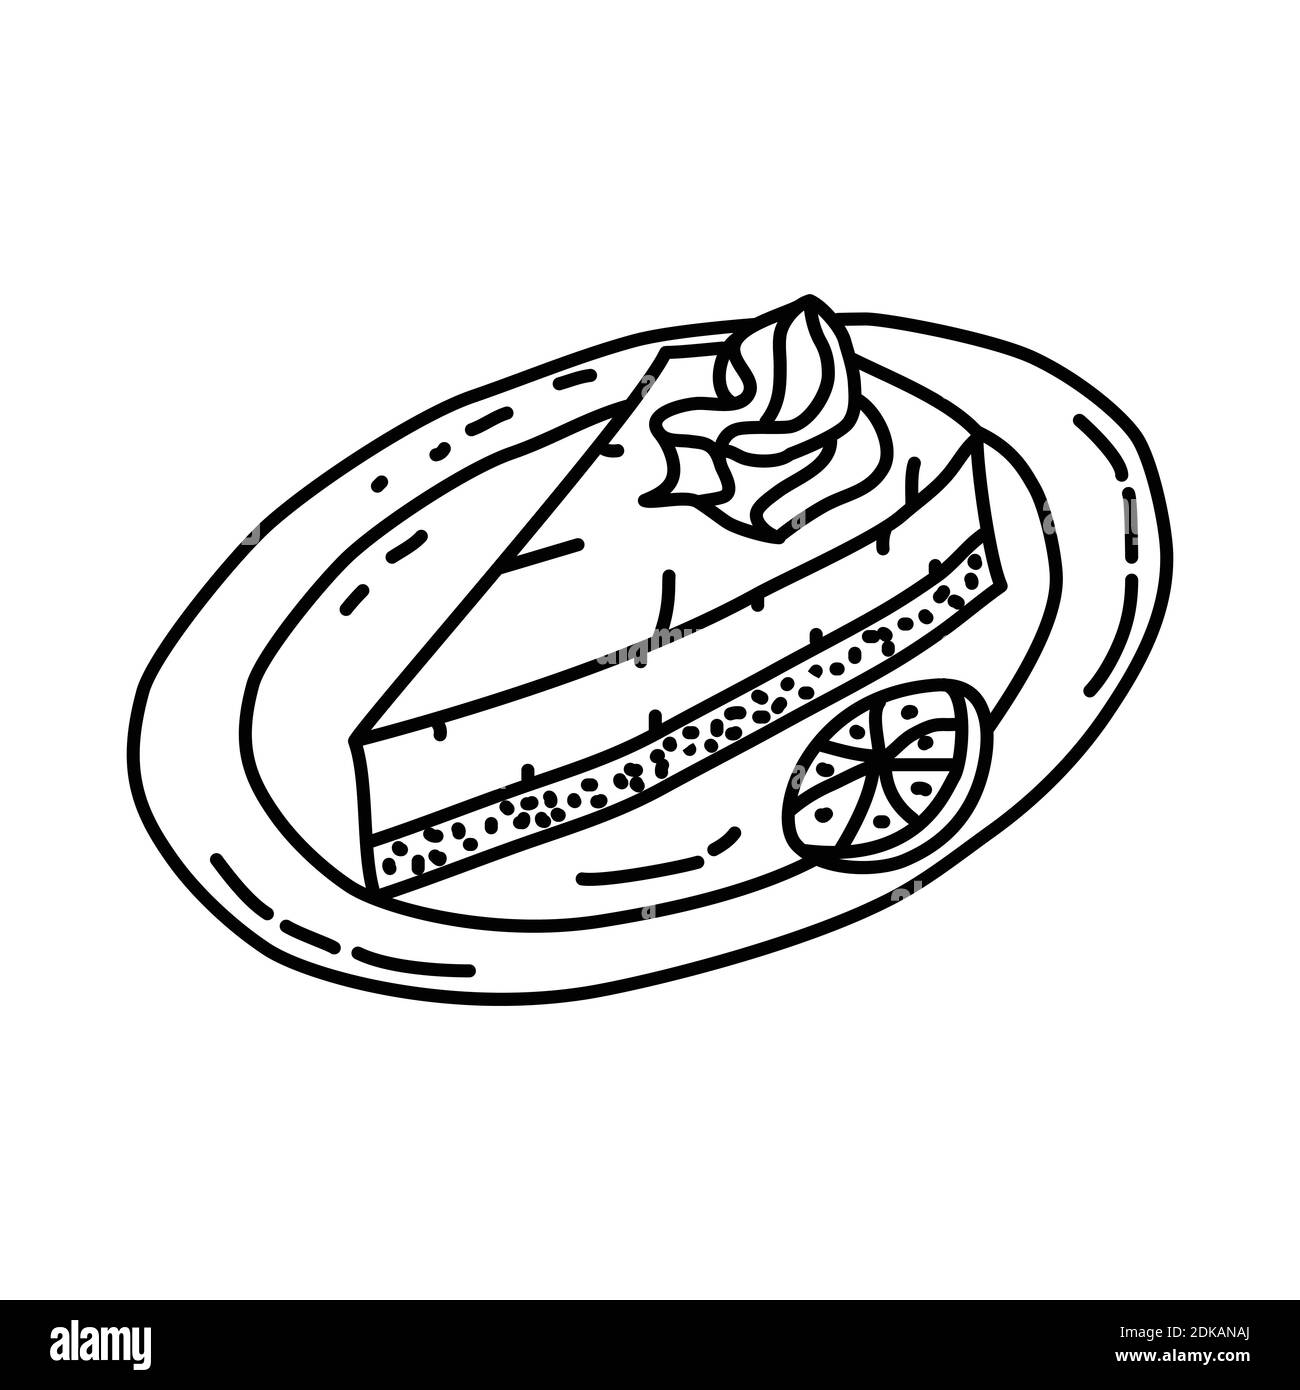 Icona della torta limite chiave. Doodle disegnata a mano o stile icona contorno Illustrazione Vettoriale